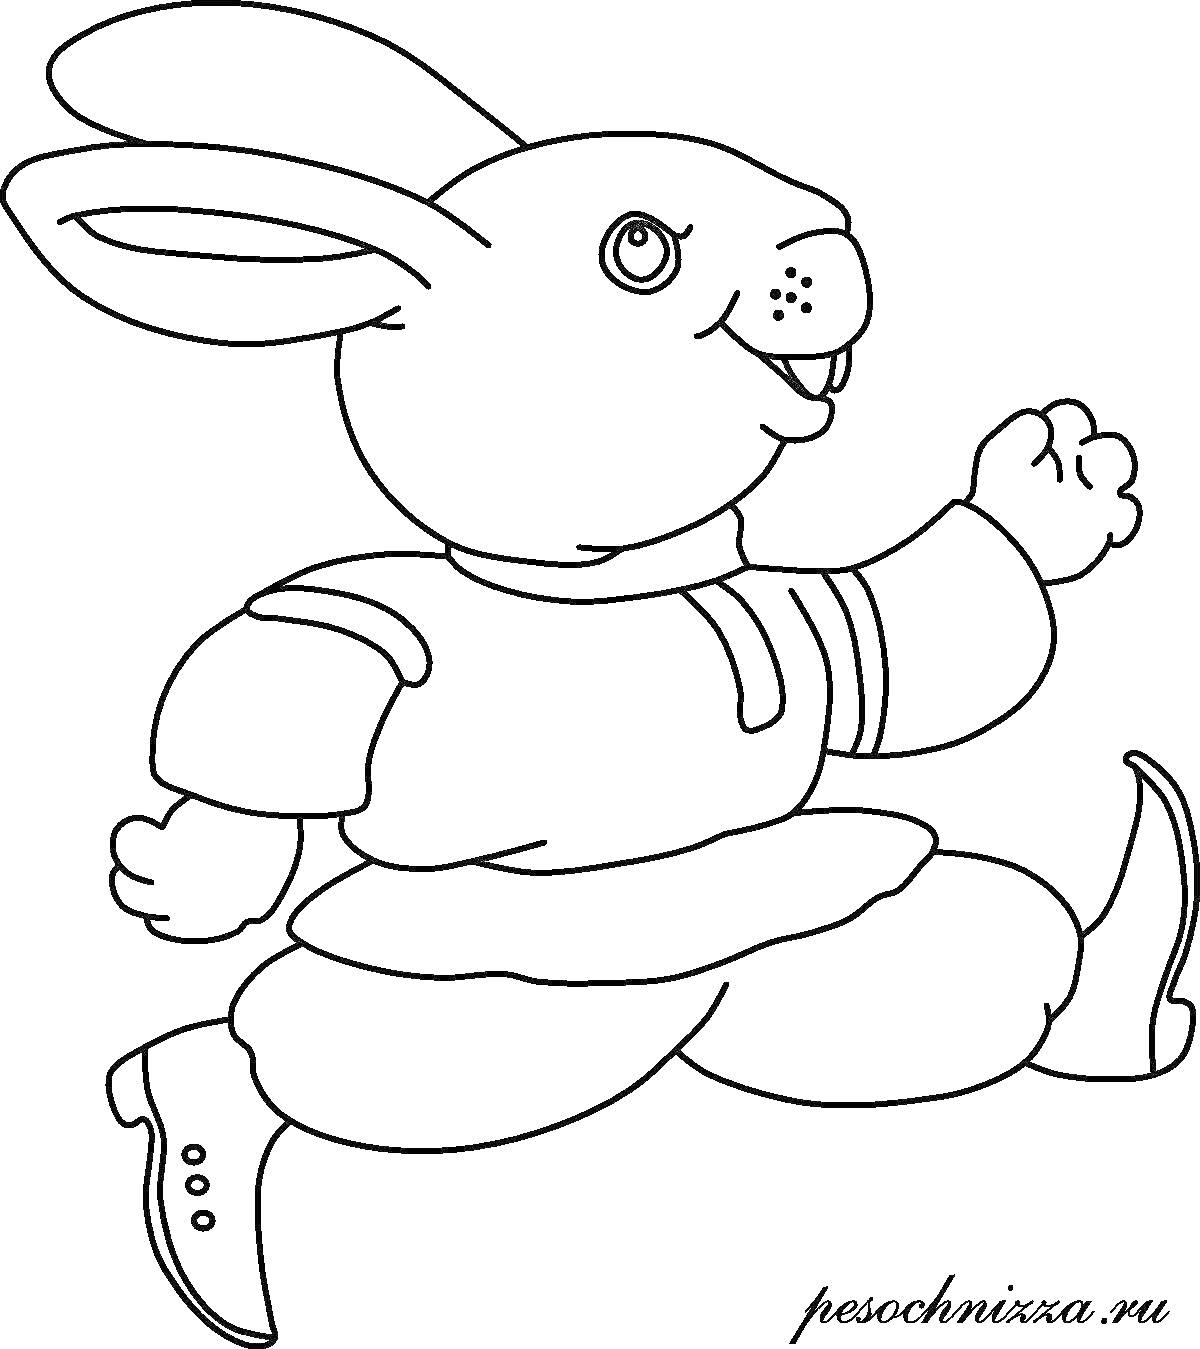 Раскраска Бегущий сказочный кролик в ботинках и одежде